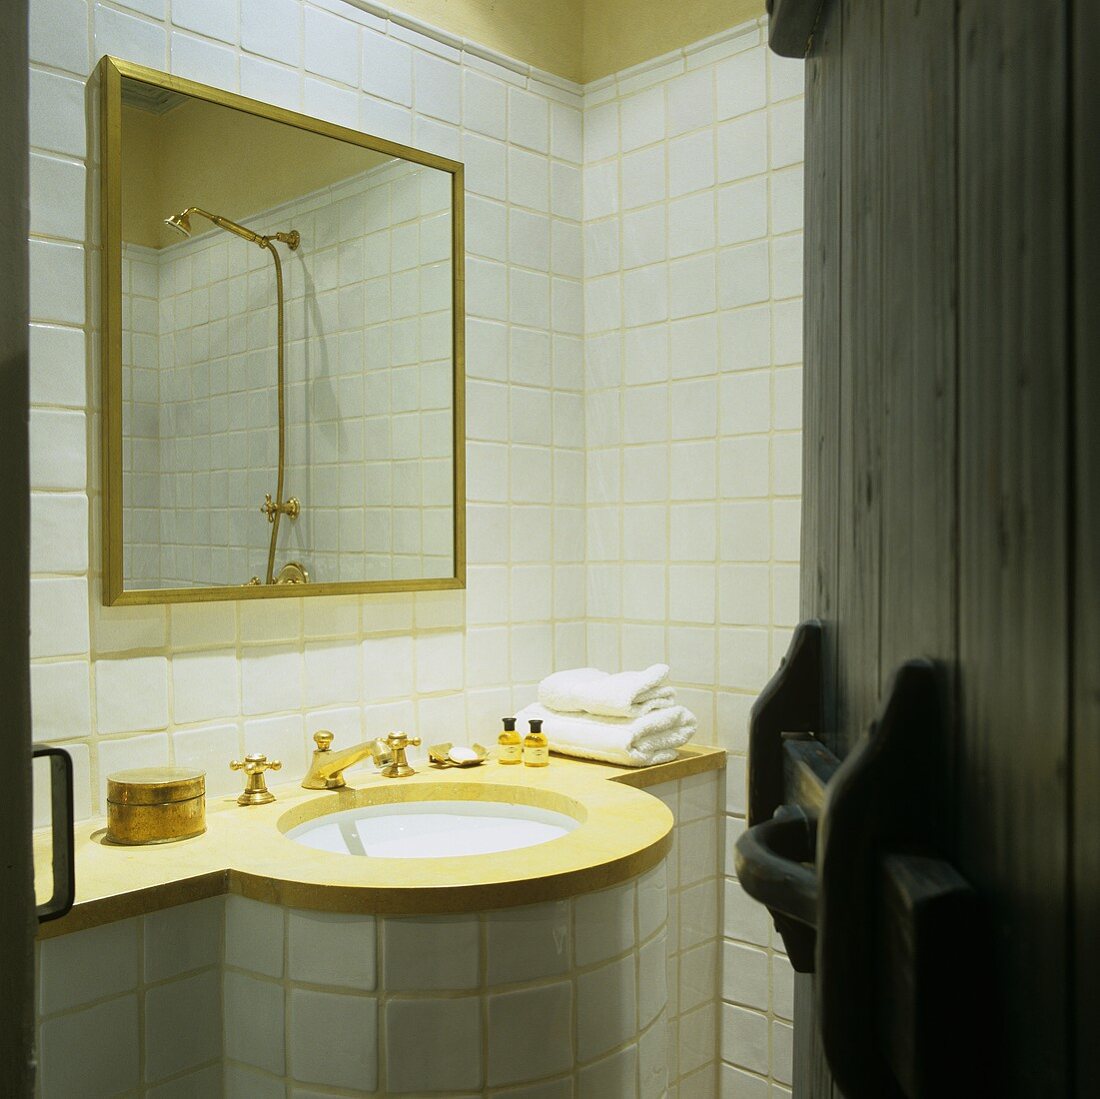 Blick in weissgefliestes Bad auf geschwungenem Waschtisch mit Messingarmatur und Spiegel im Goldrahmen